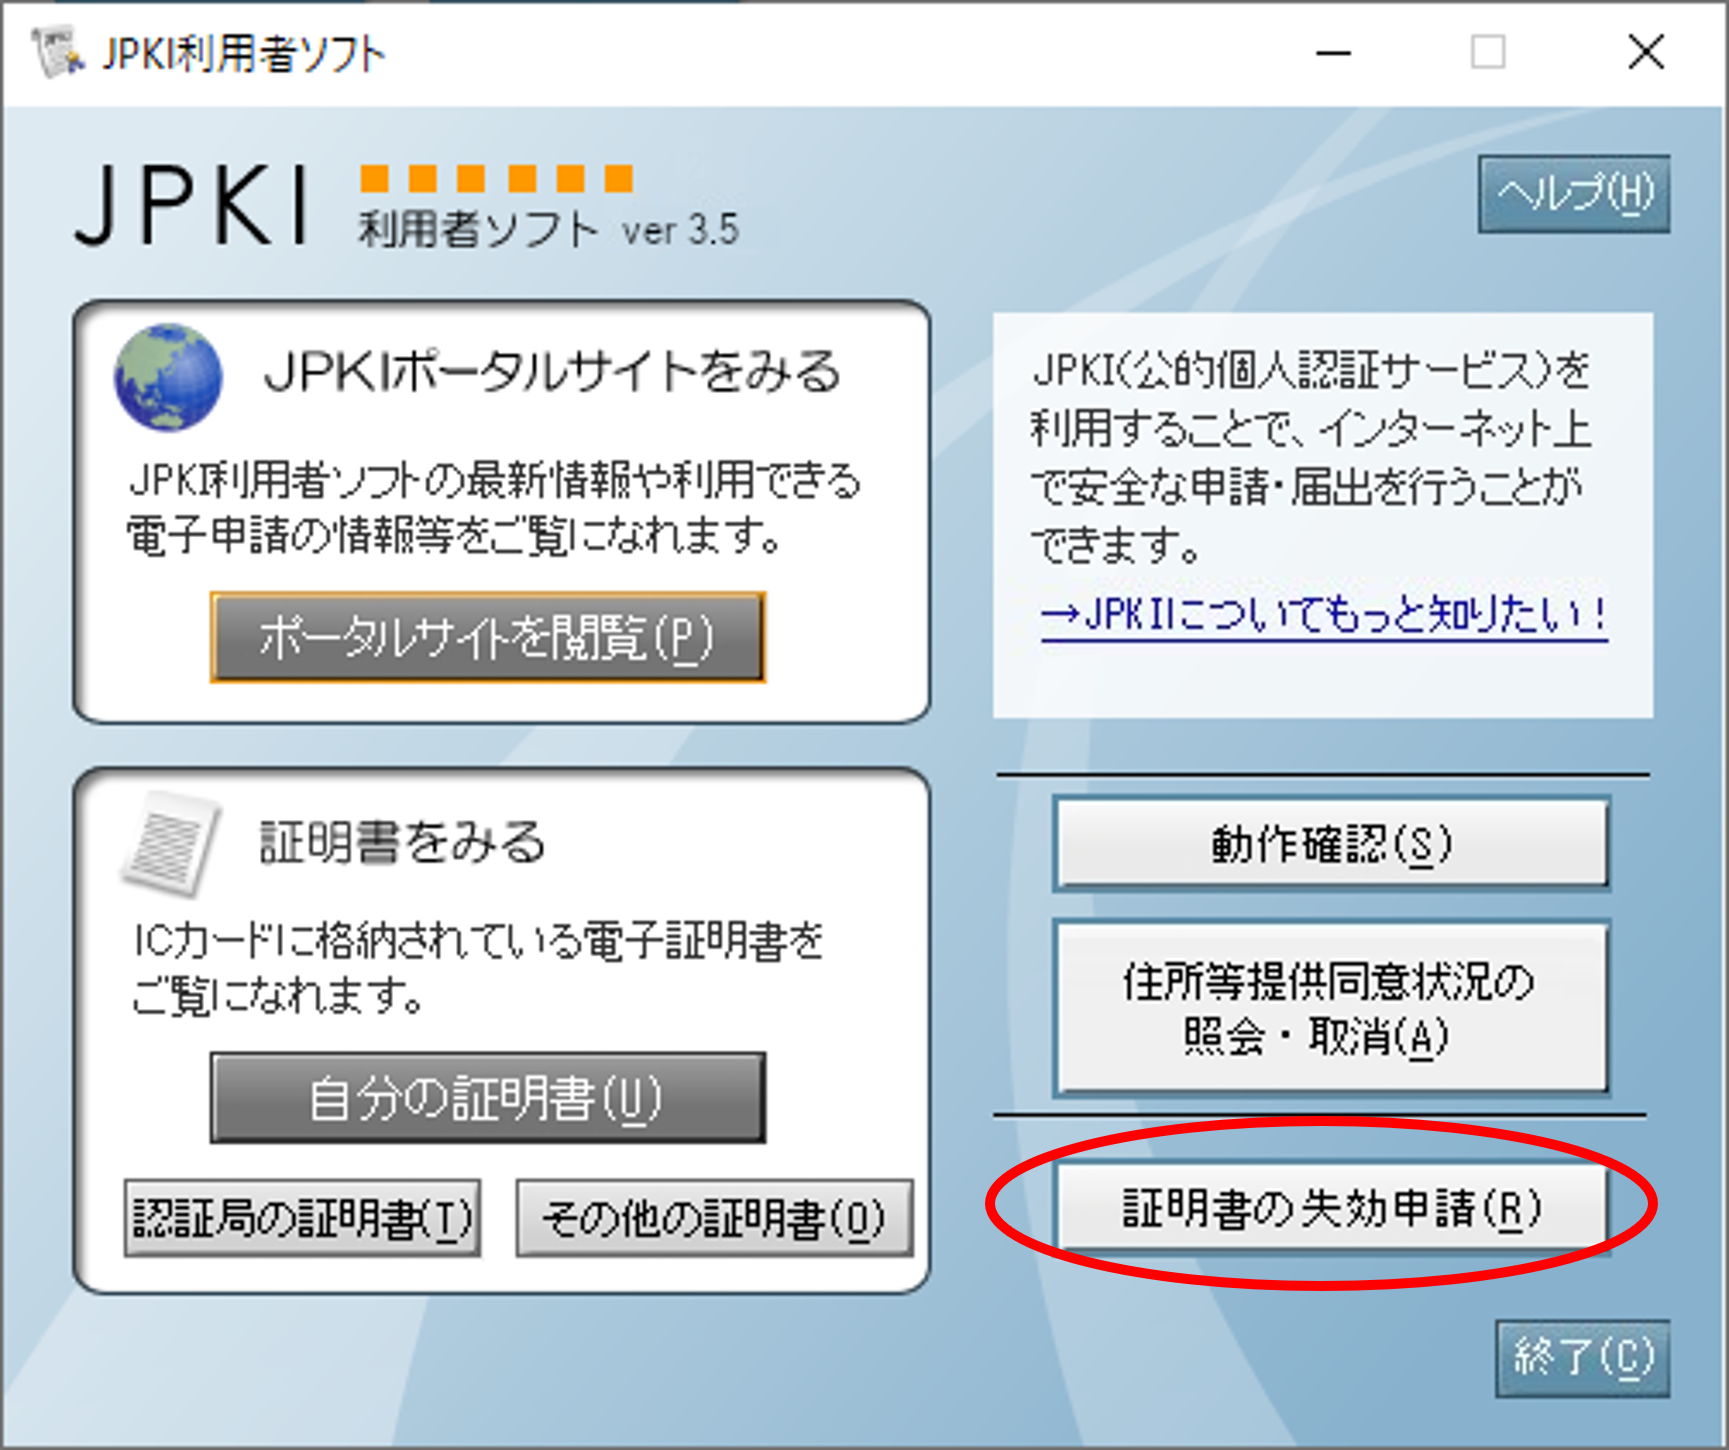 「JPKI利用者ソフト」のウィンドウイメージ